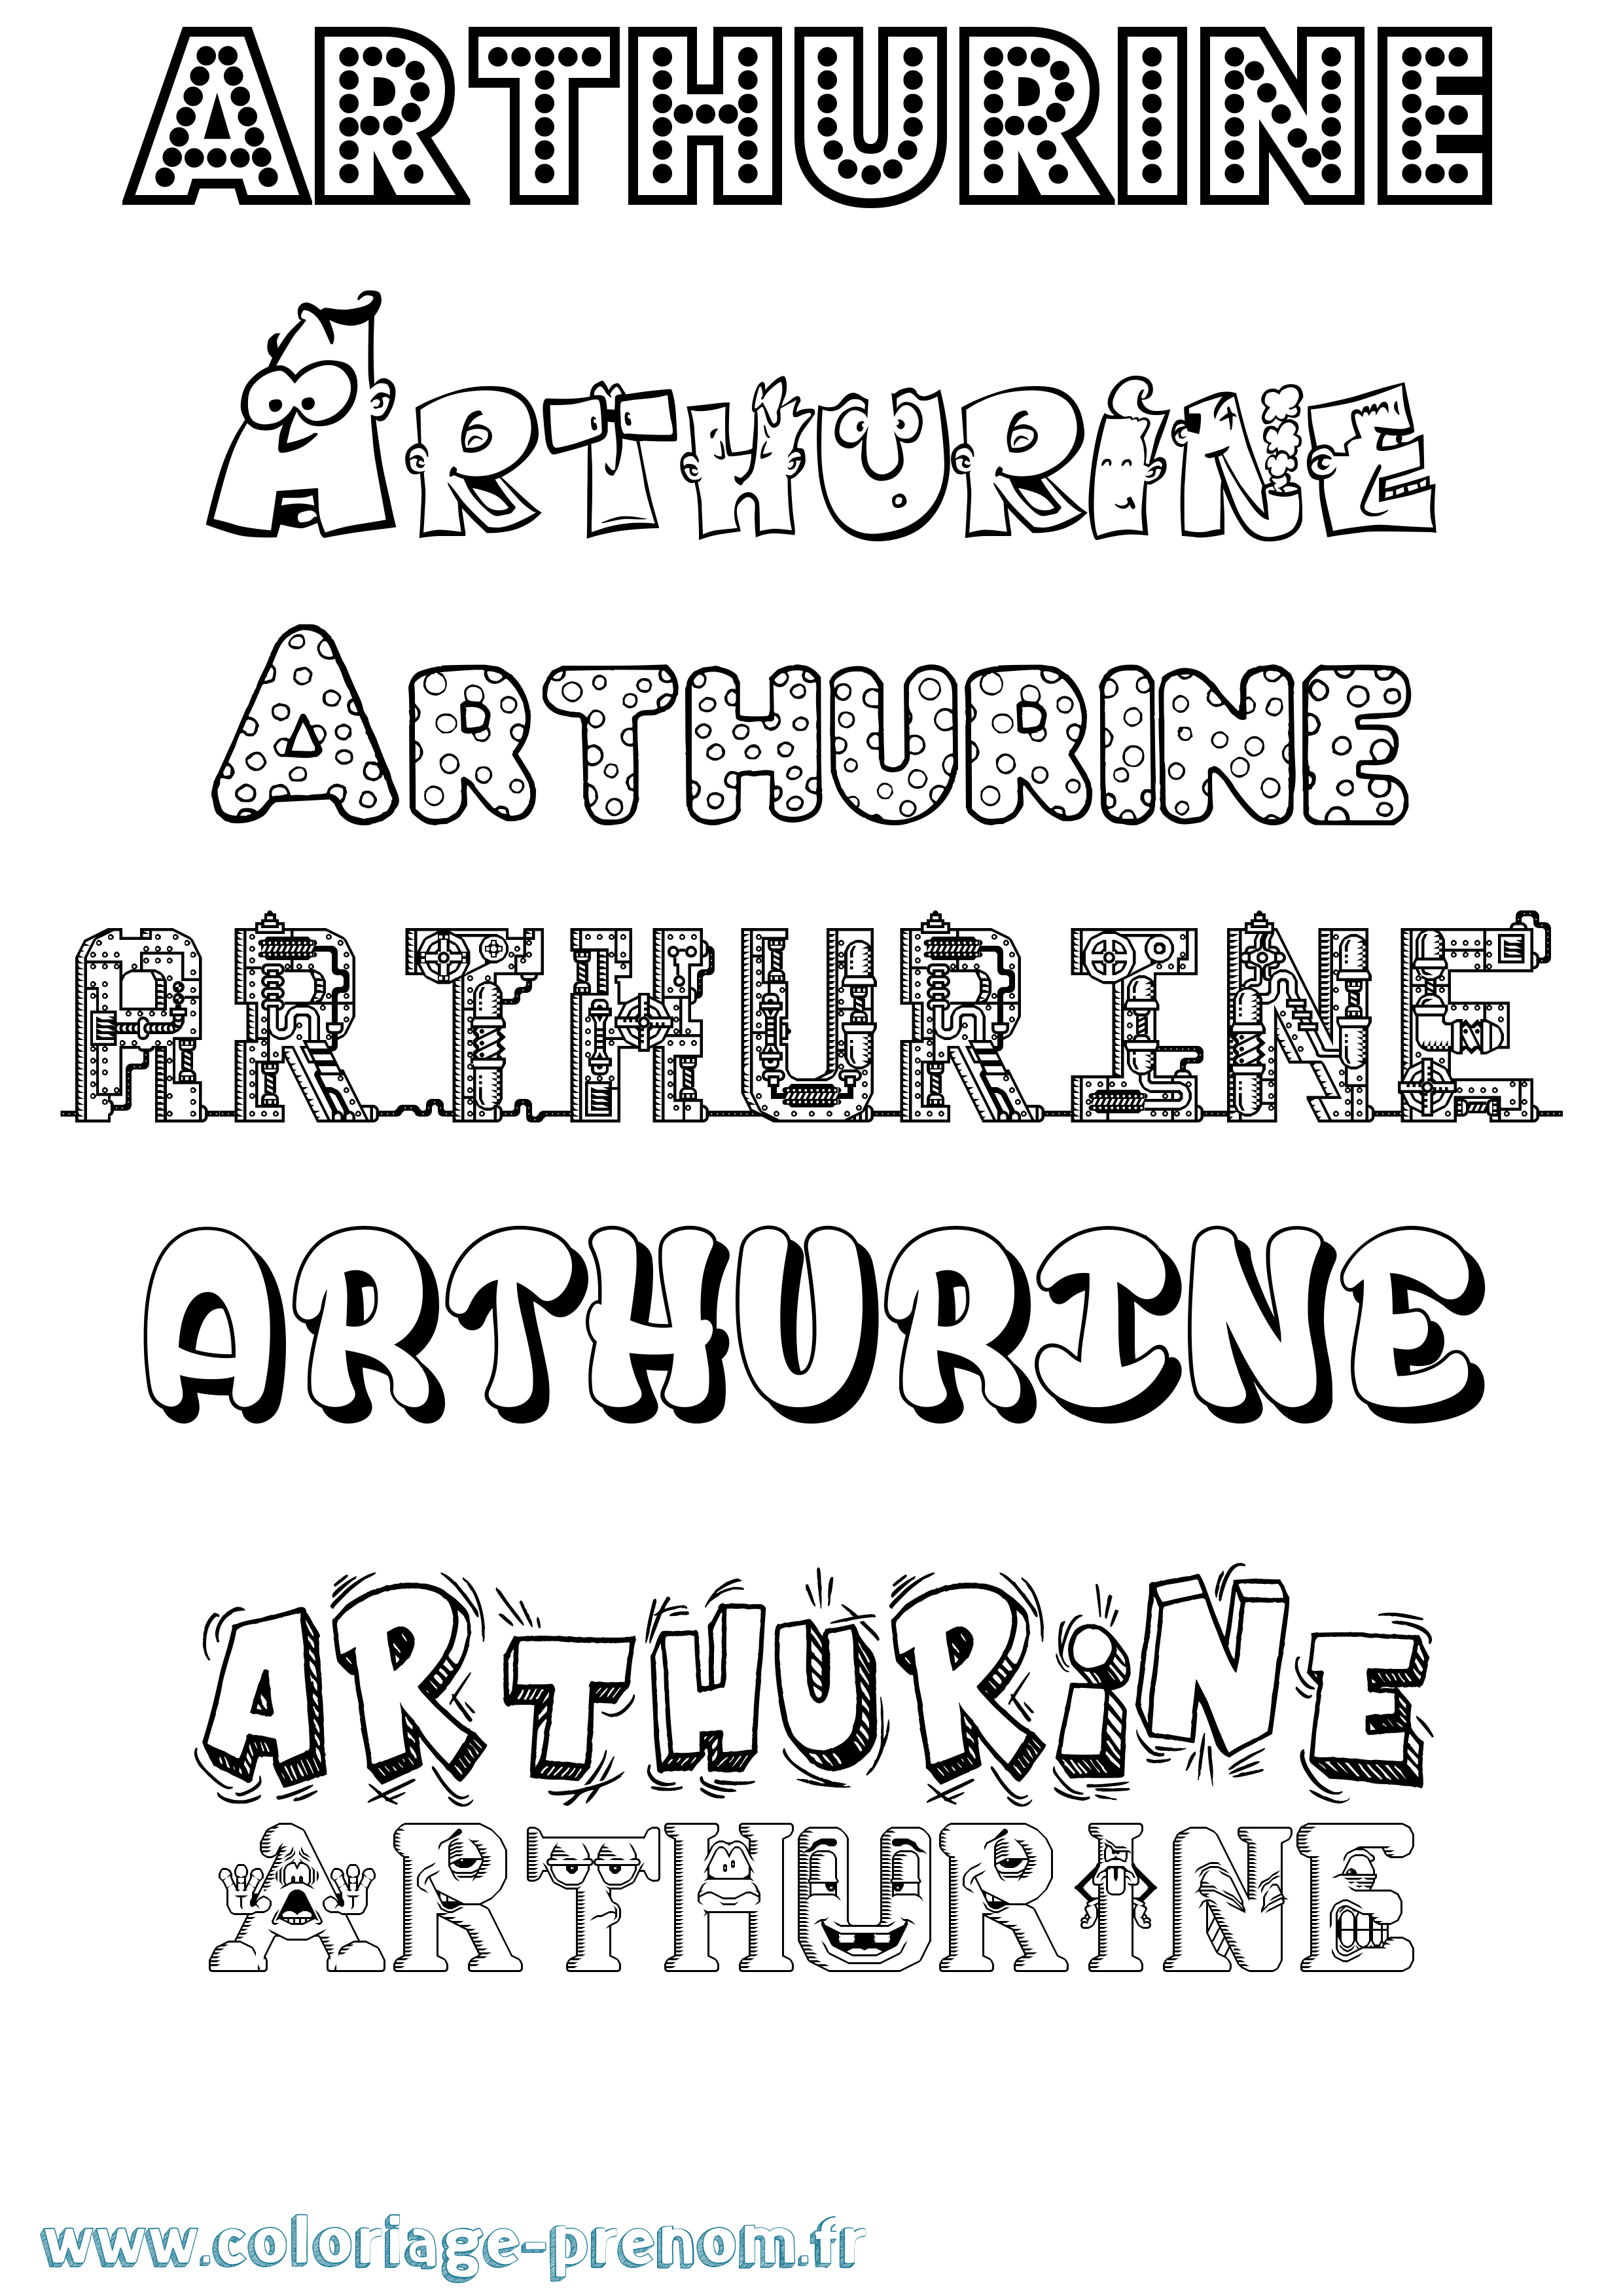 Coloriage prénom Arthurine Fun